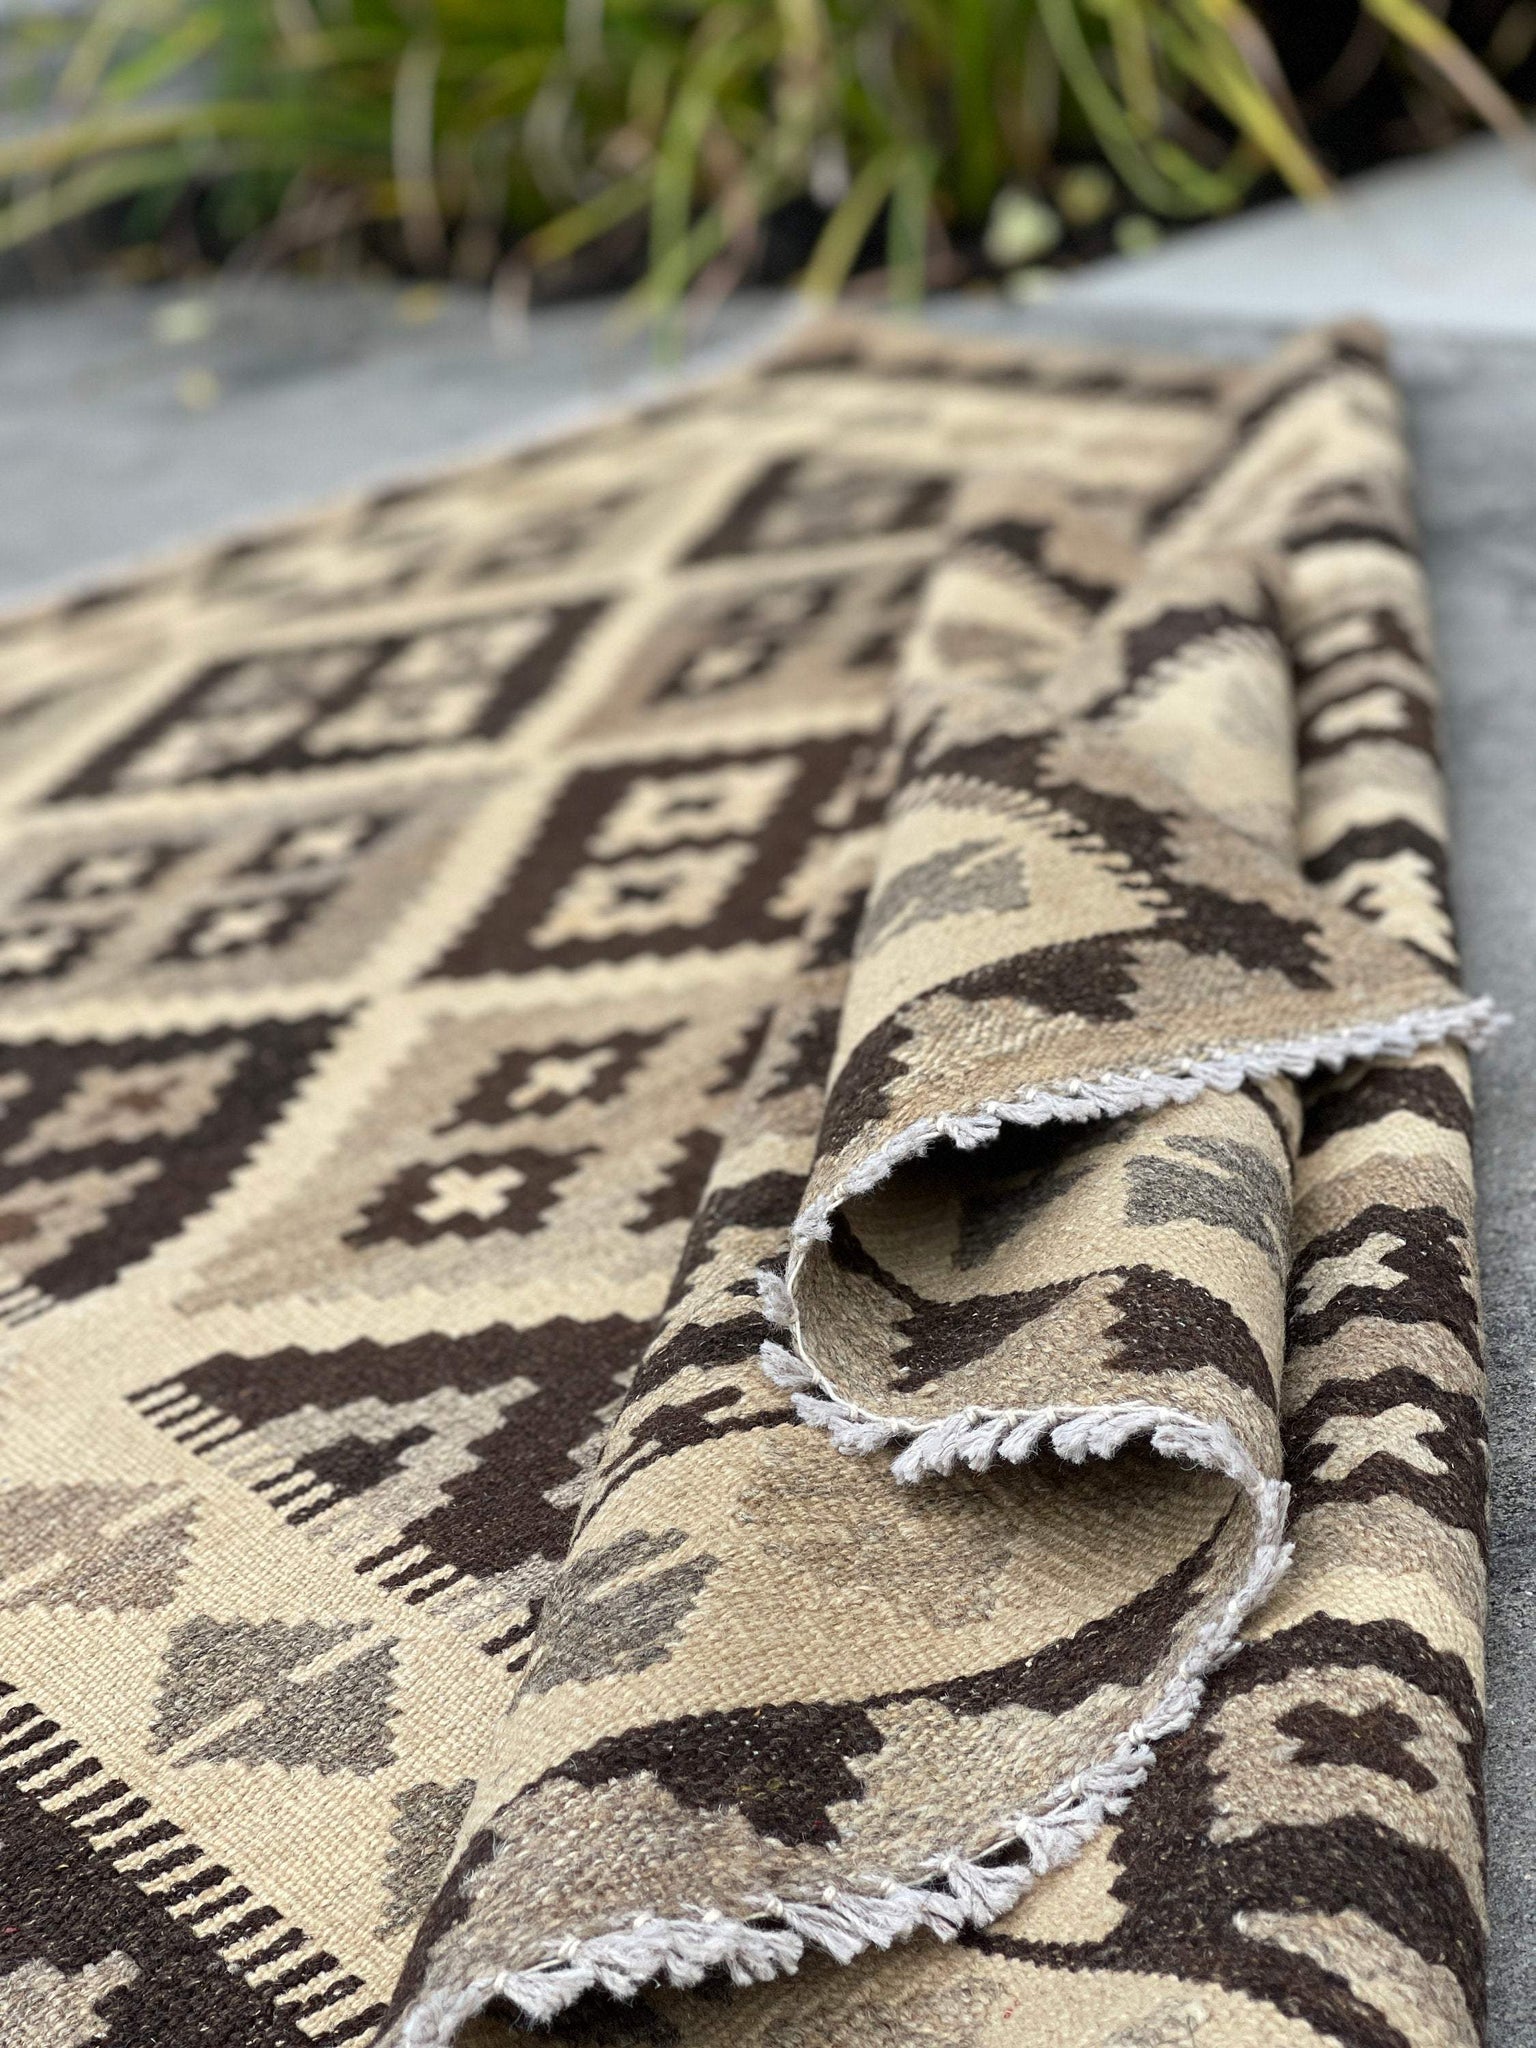 3x5 (120x150) Handmade Afghan Kilim Runner Rug | Ivory Coffee Brown | Flatweave Flat Weave Tribal Turkish Oushak Moroccan Oriental Wool